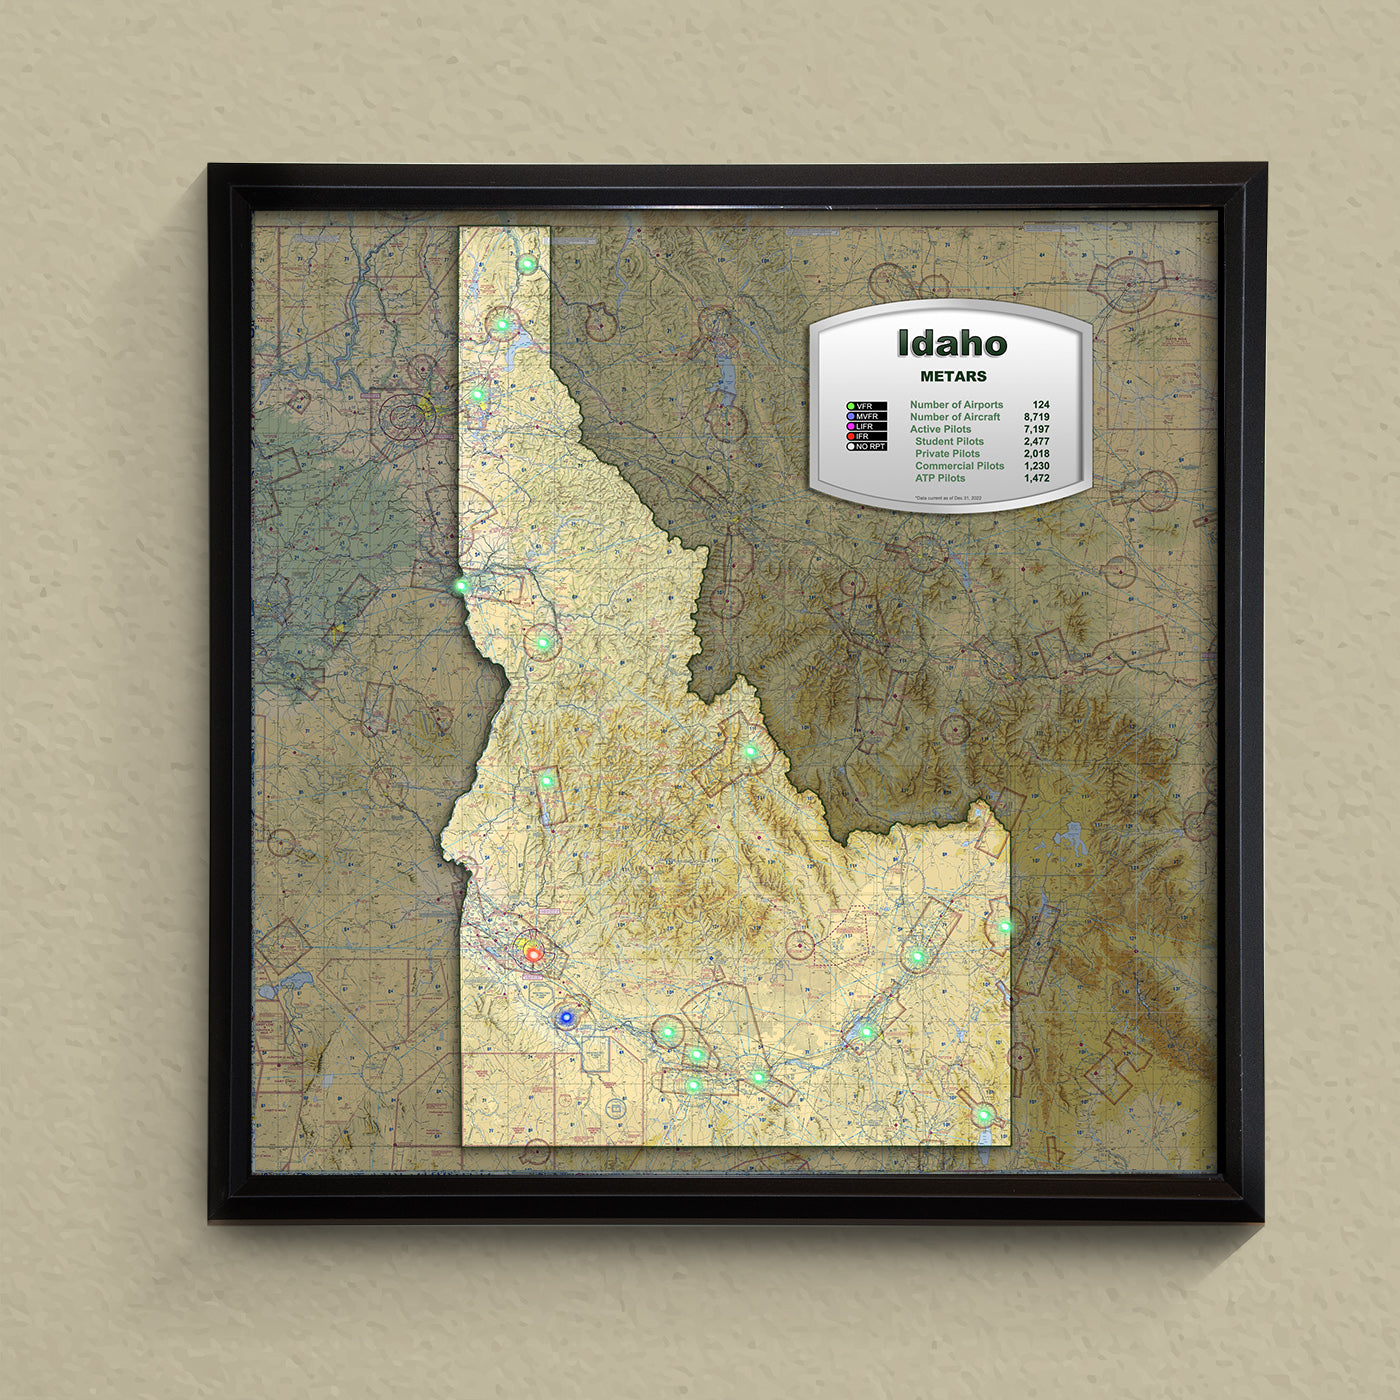 State METAR Map - Idaho